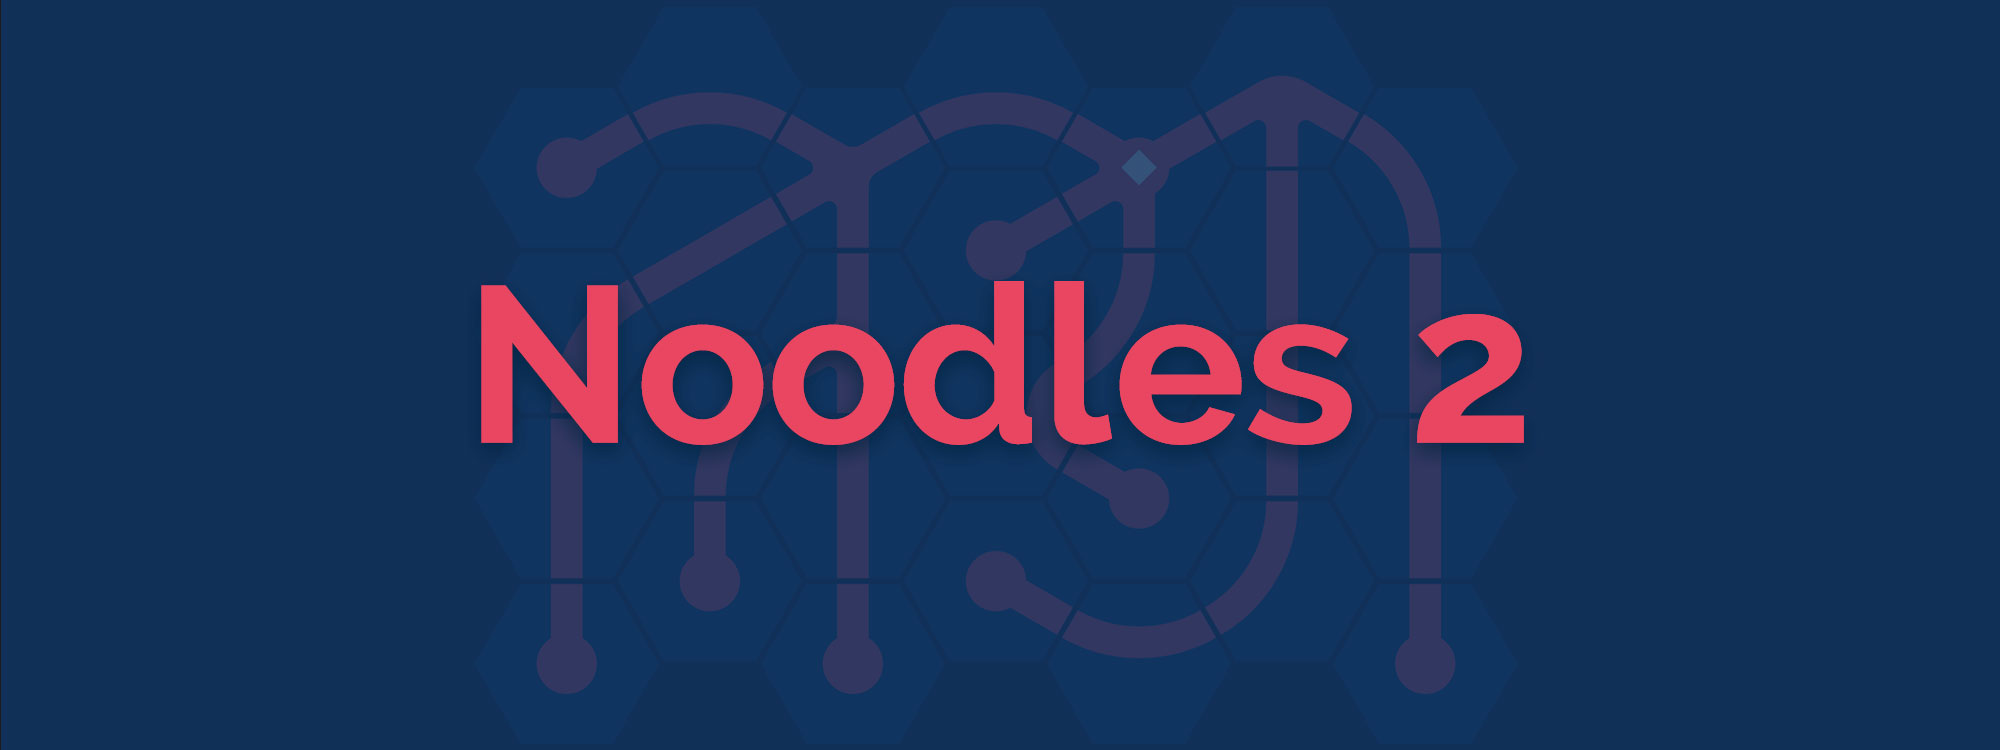 Noodles 2